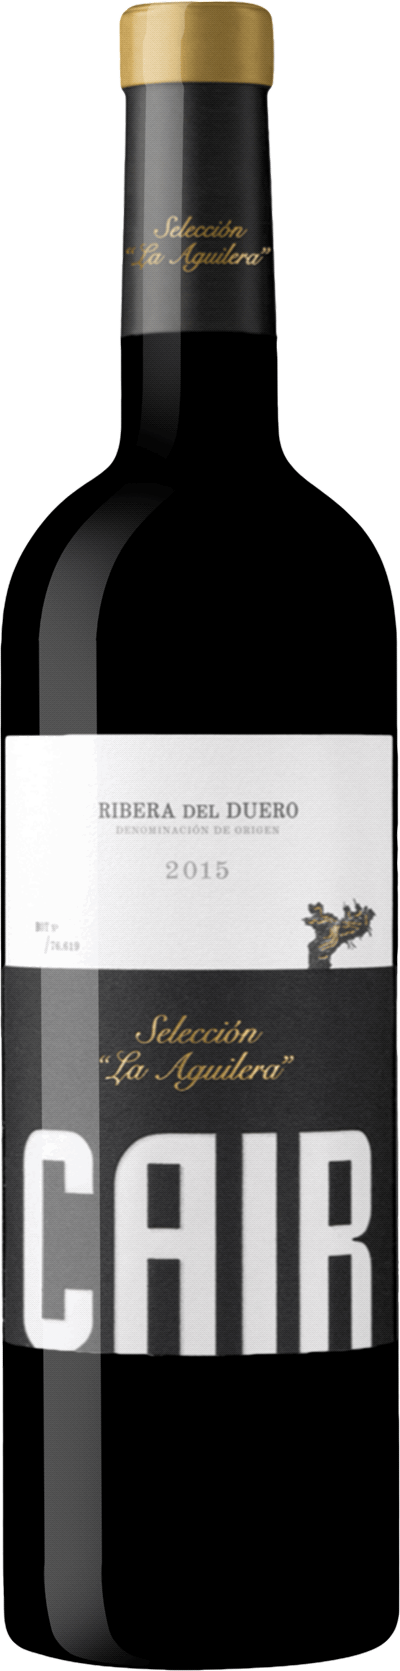 Cair Selección La Aguilera Ribera del Duero, 2019